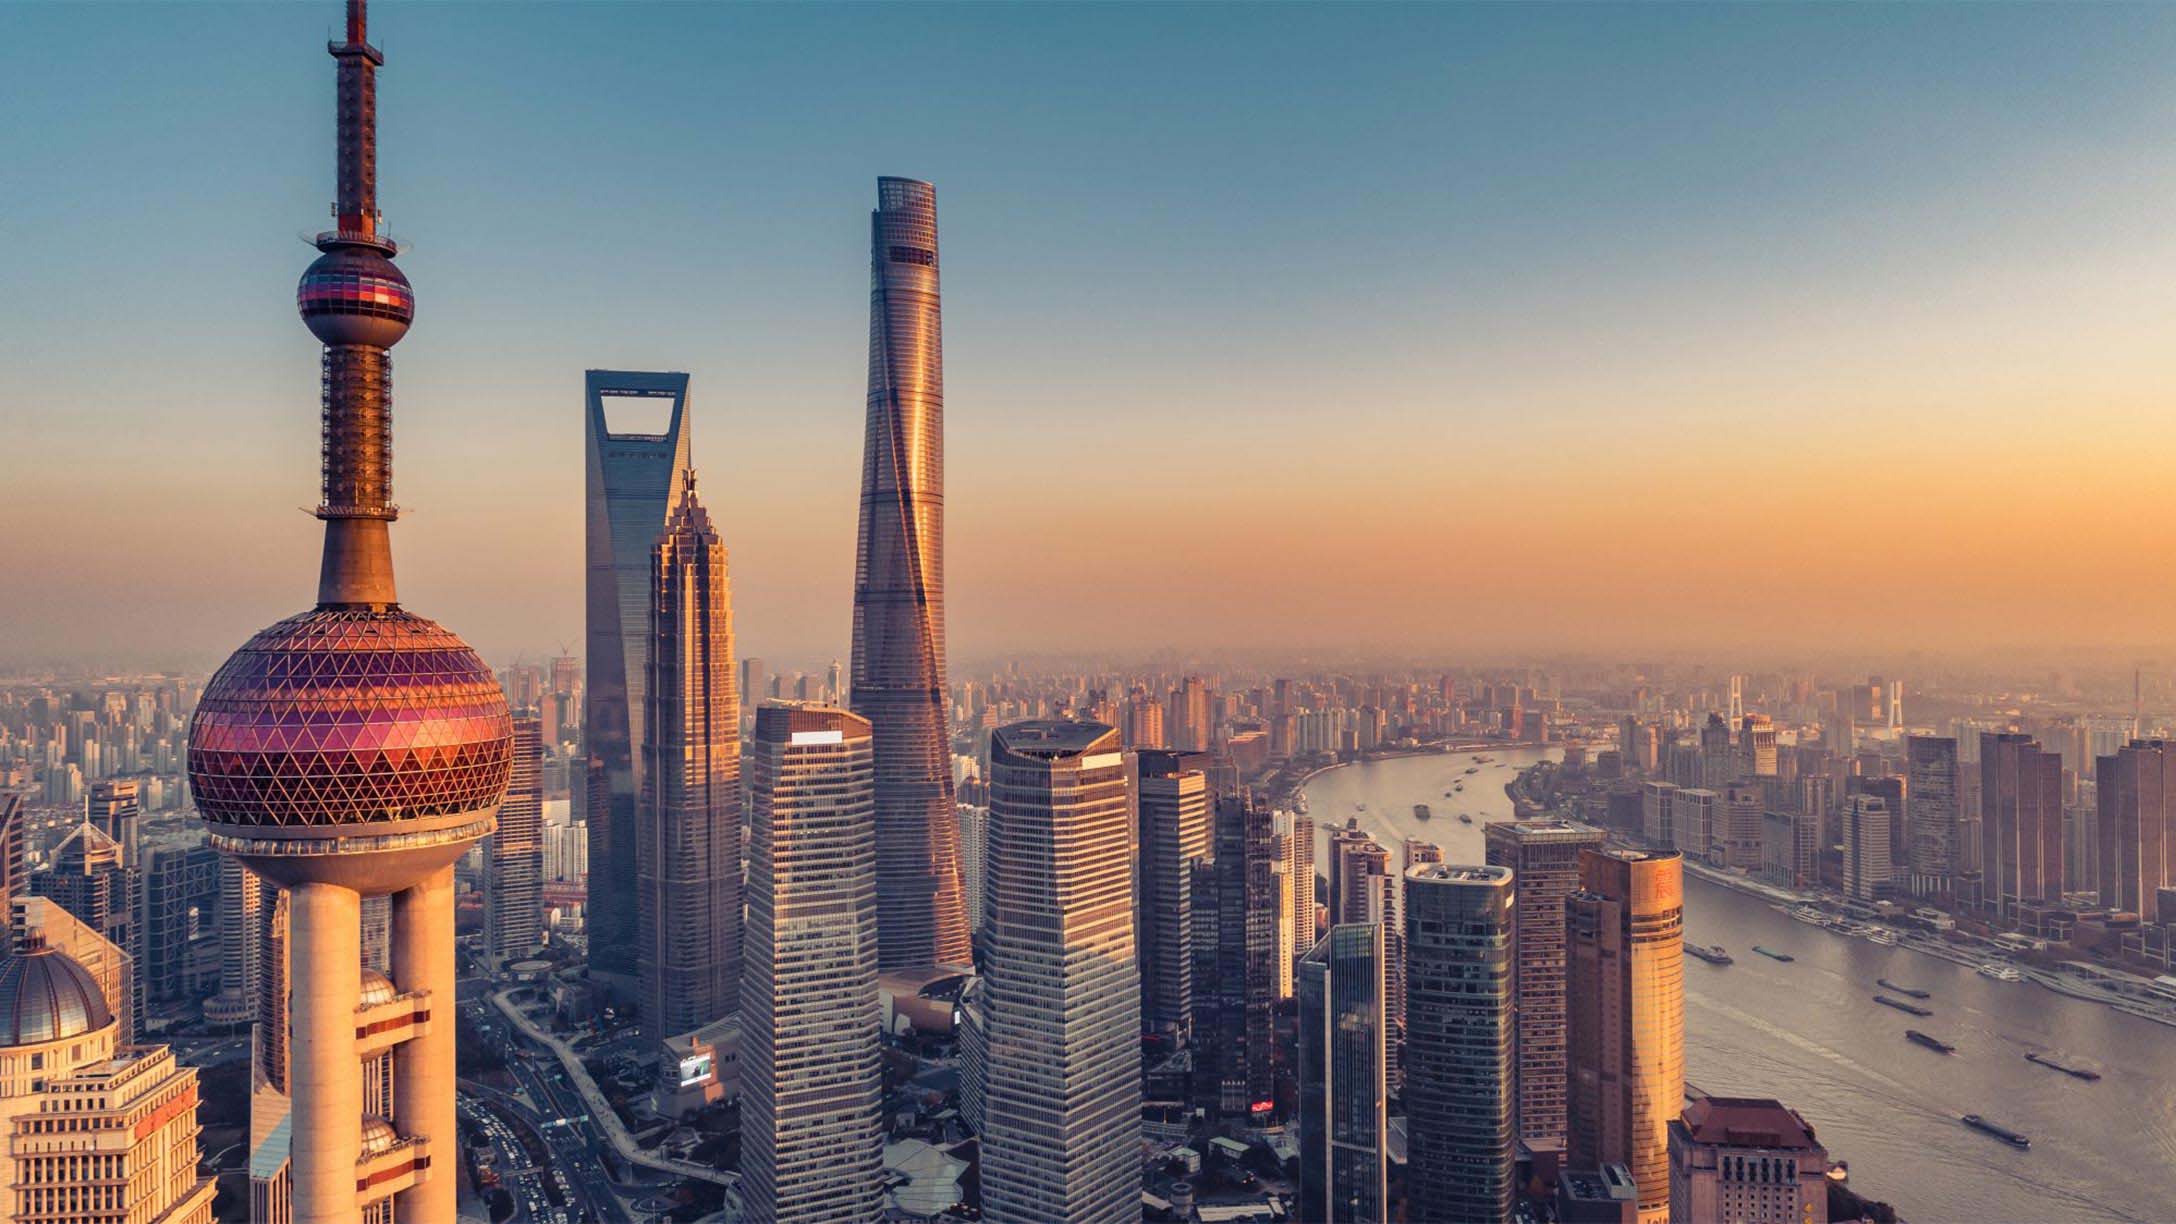 Chinese city skyline